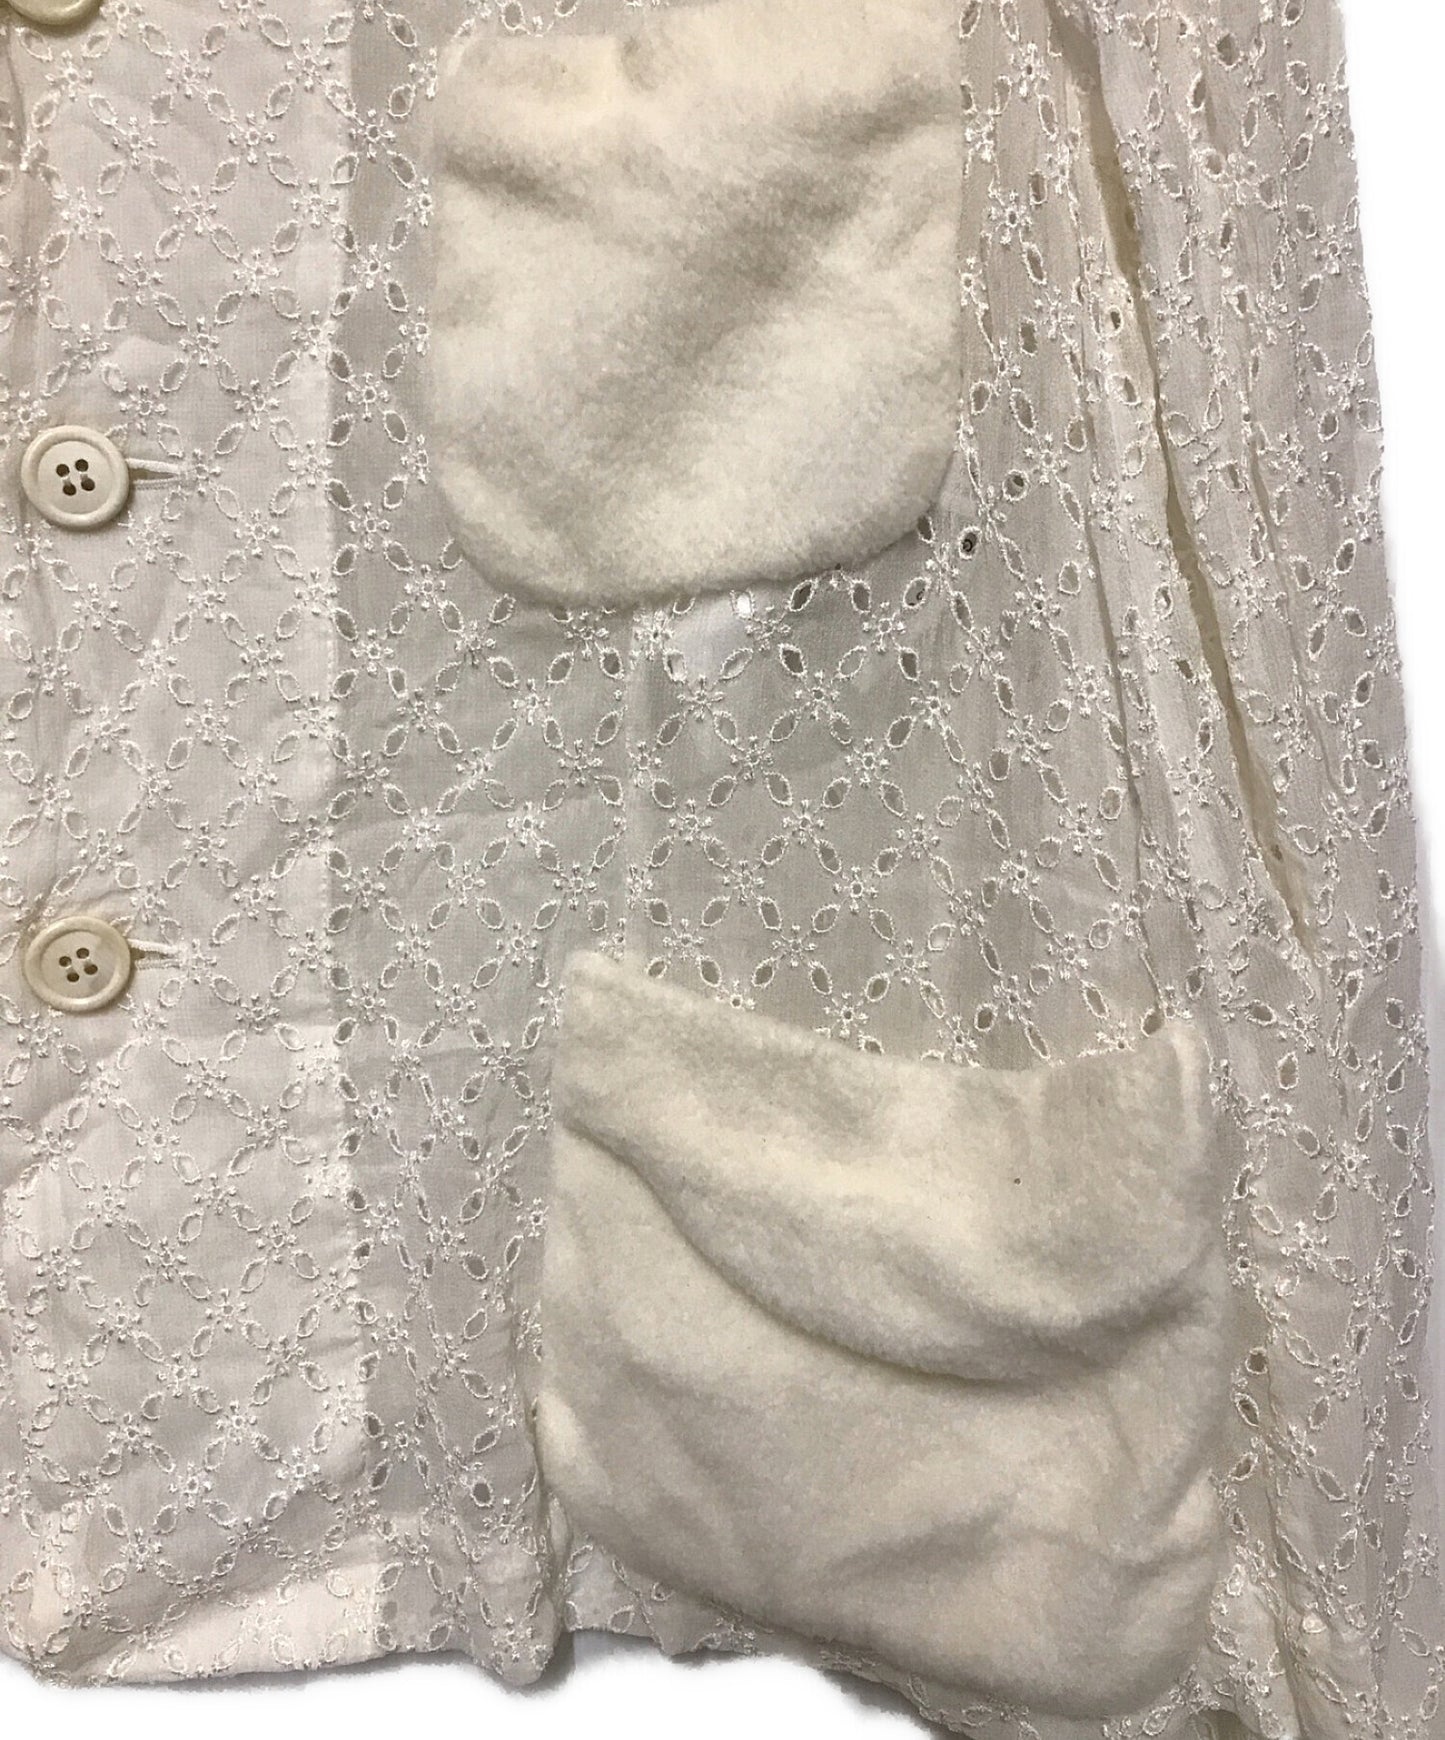 [Pre-owned] COMME des GARCONS COMME des GARCONS lace shirt jacket RK-J028